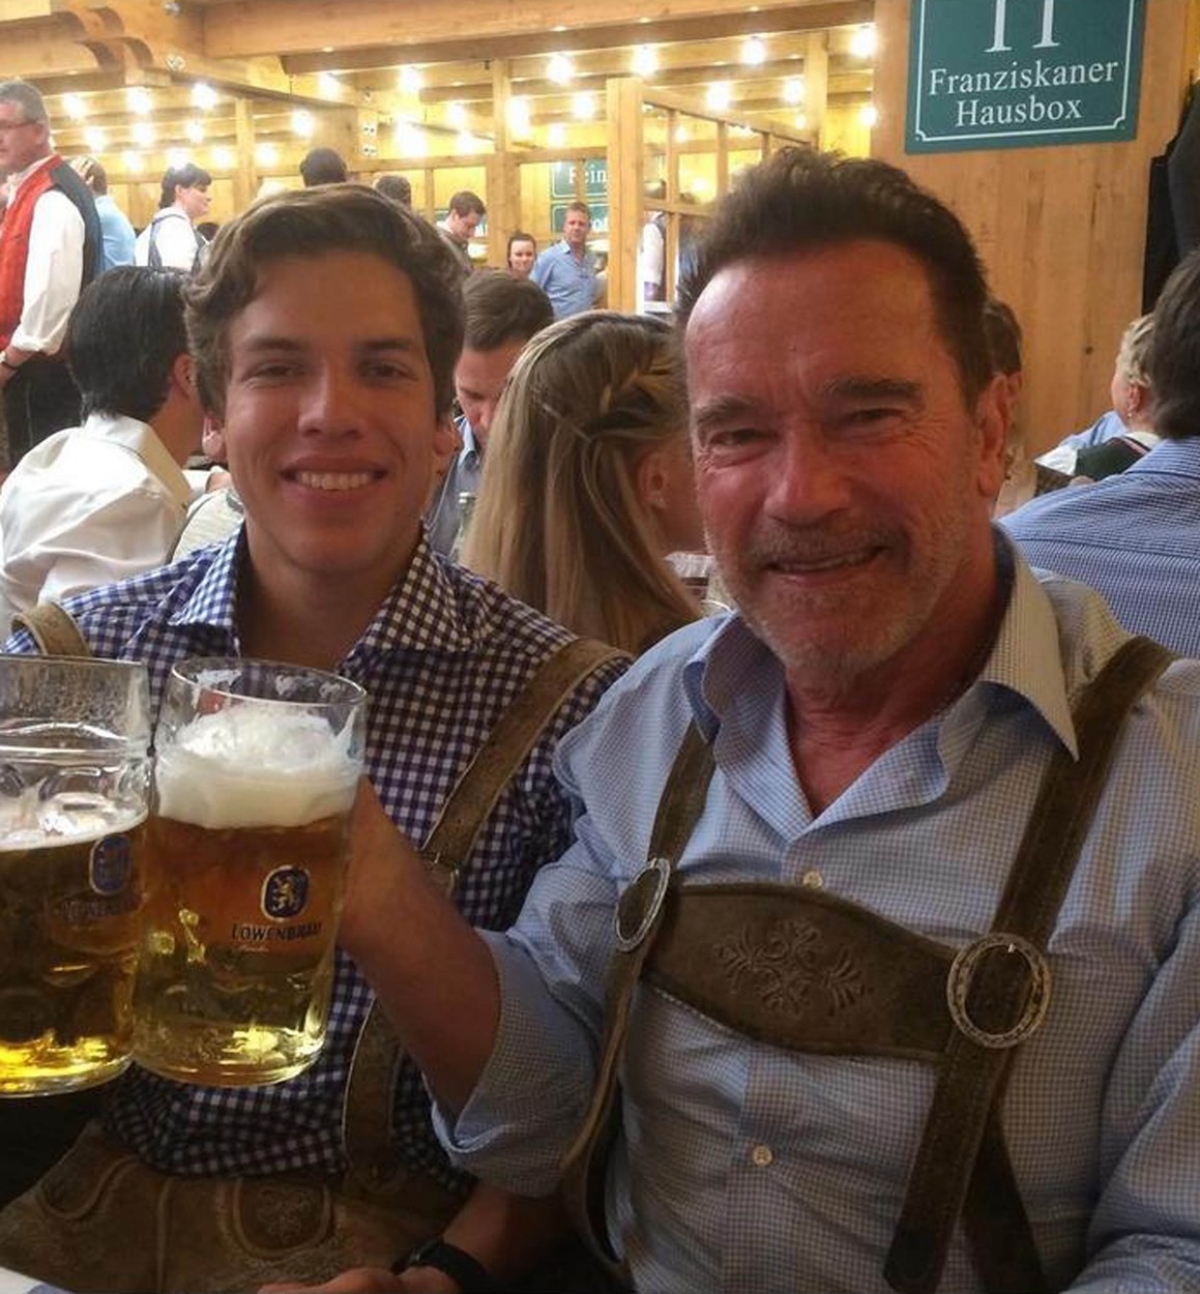 Joseph Baena este cu Arnold Schwarzenegger la o terasă. Cei doi ciocnesc câte o halbă de bere.